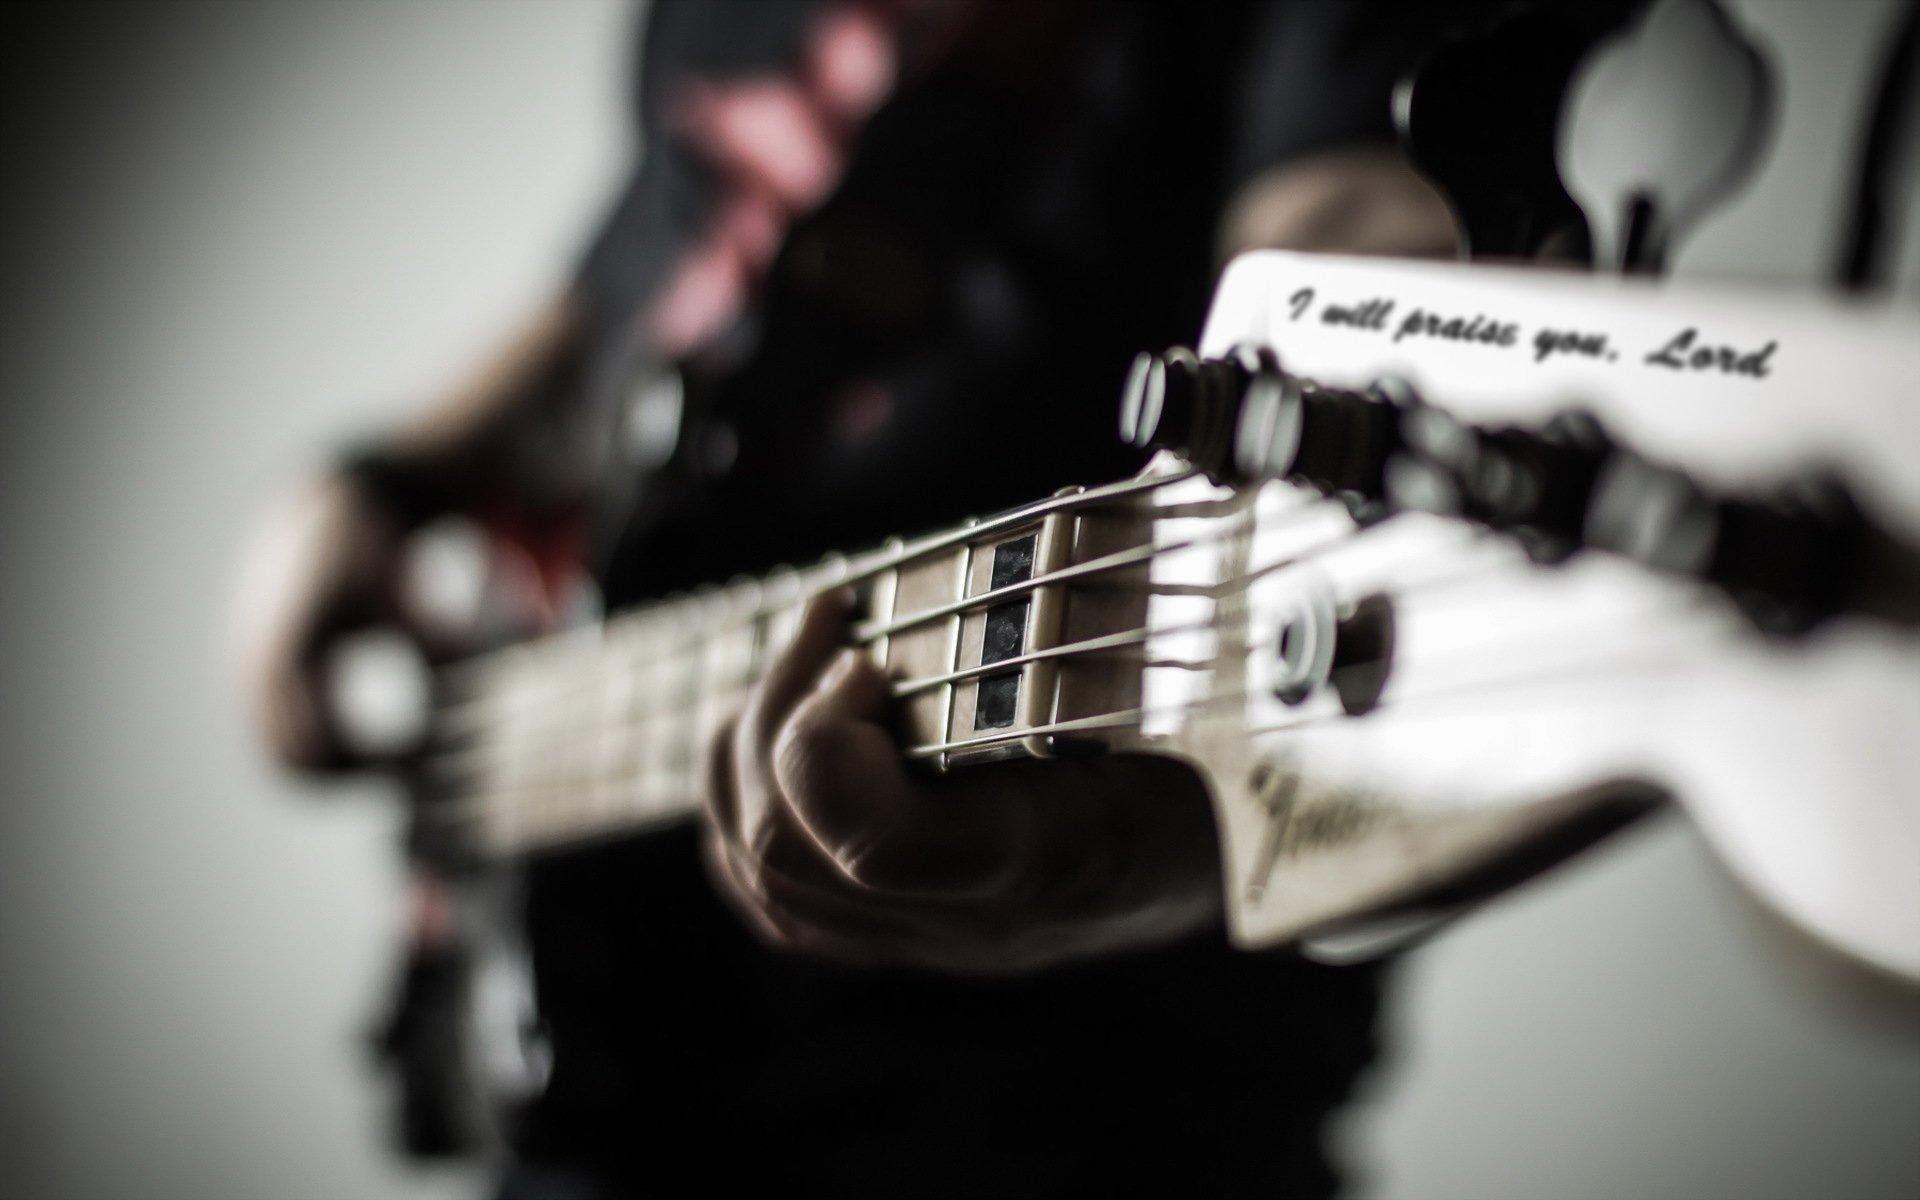 Fender Bass Wallpapers Top Free Fender Bass Backgrounds Wallpaperaccess